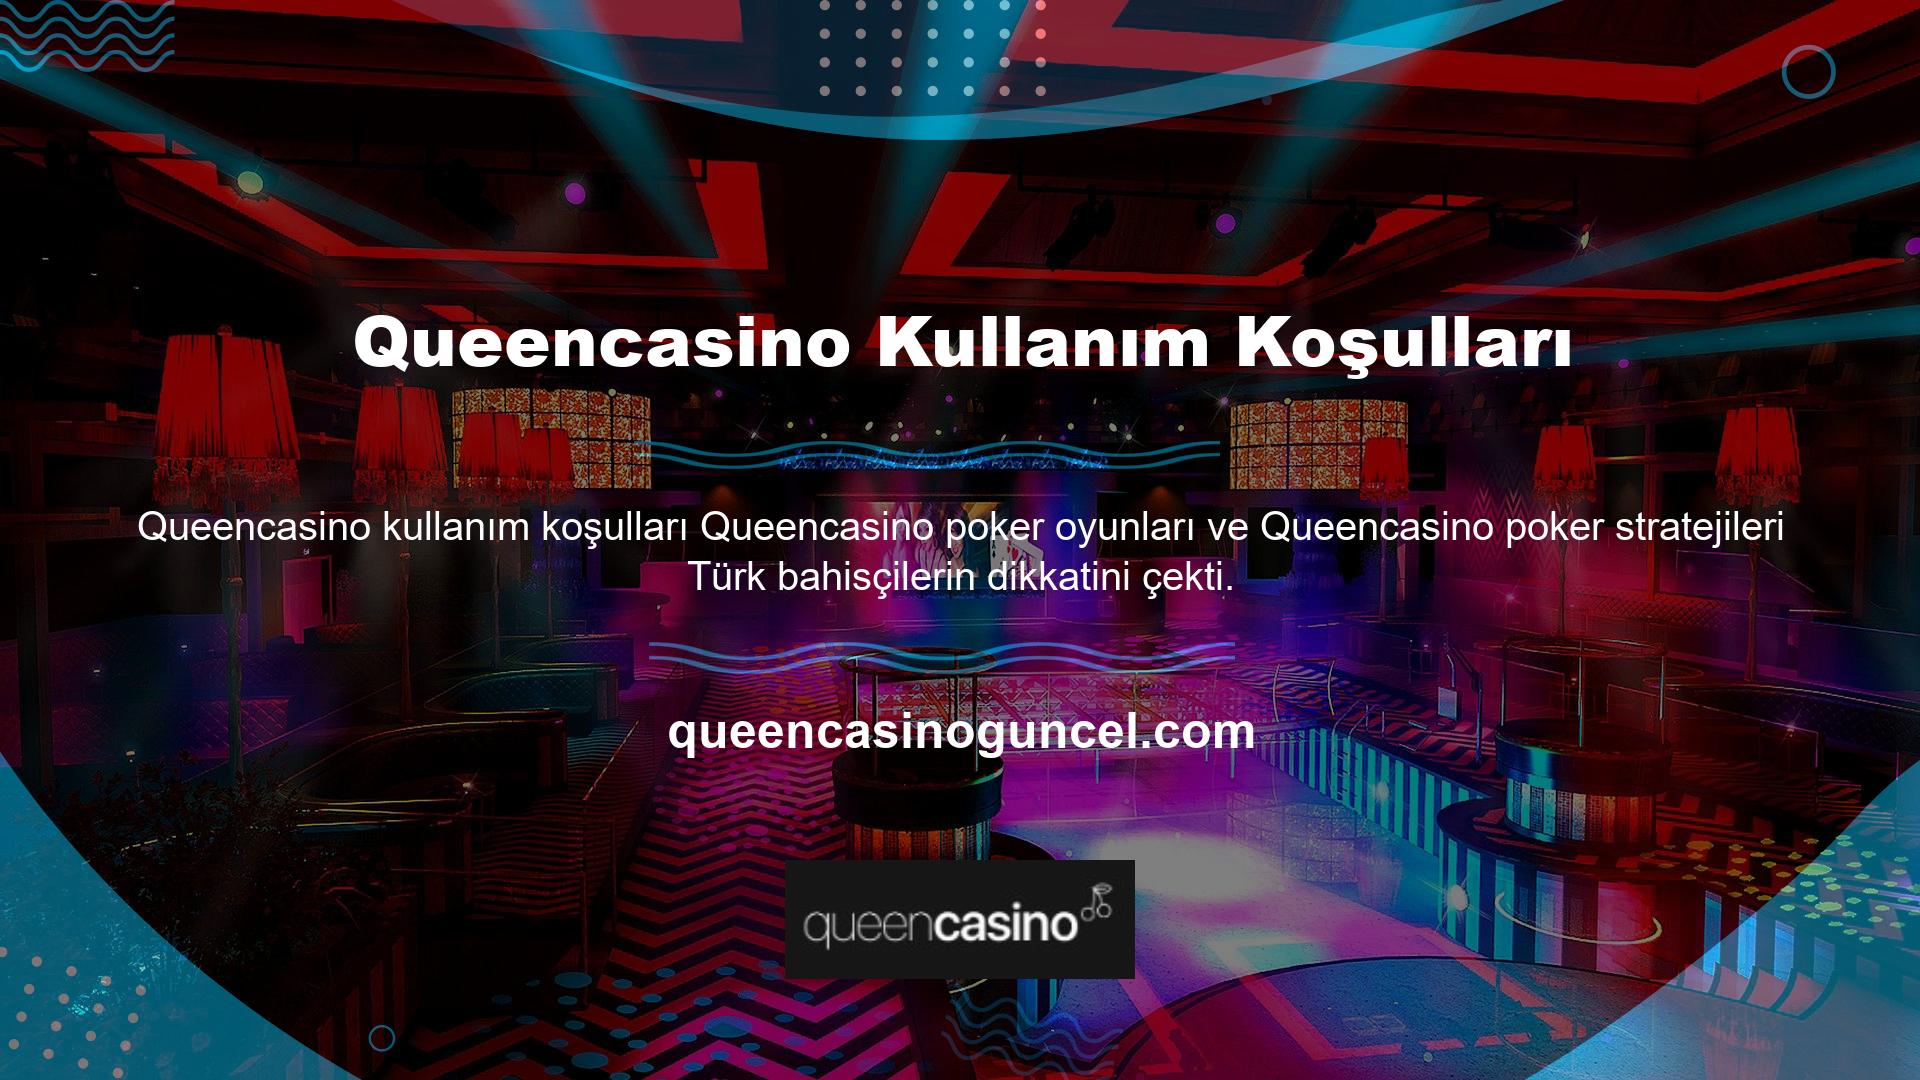 Queencasino Poker oynamak istiyorsanız Turkish Poker ve Turkish Poker gibi oyunlara göz atın